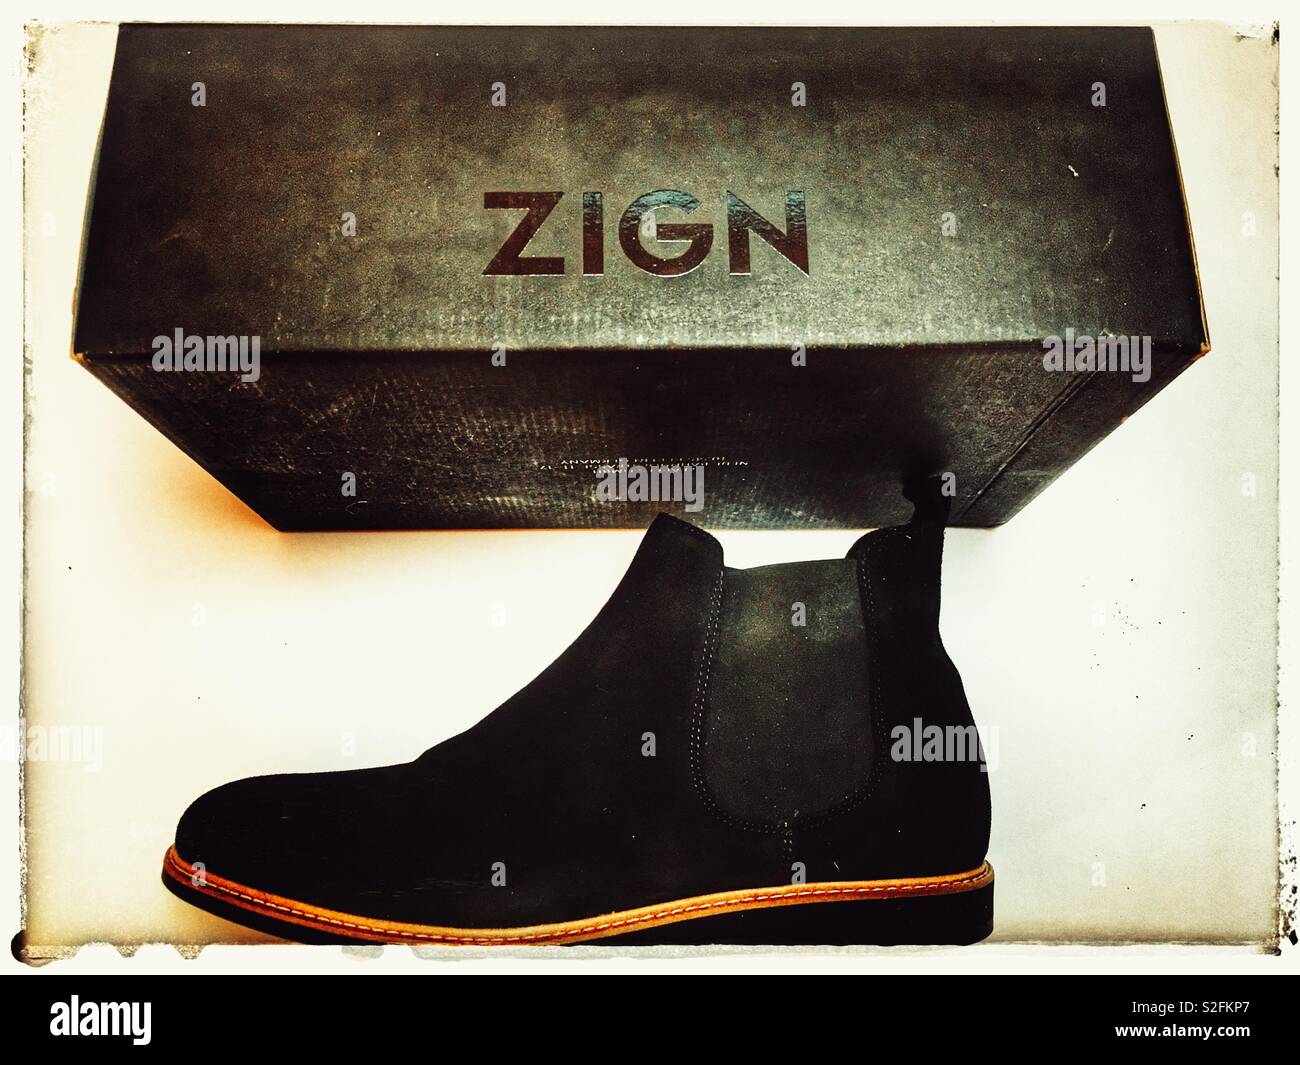 Zign Stock Photo Alamy